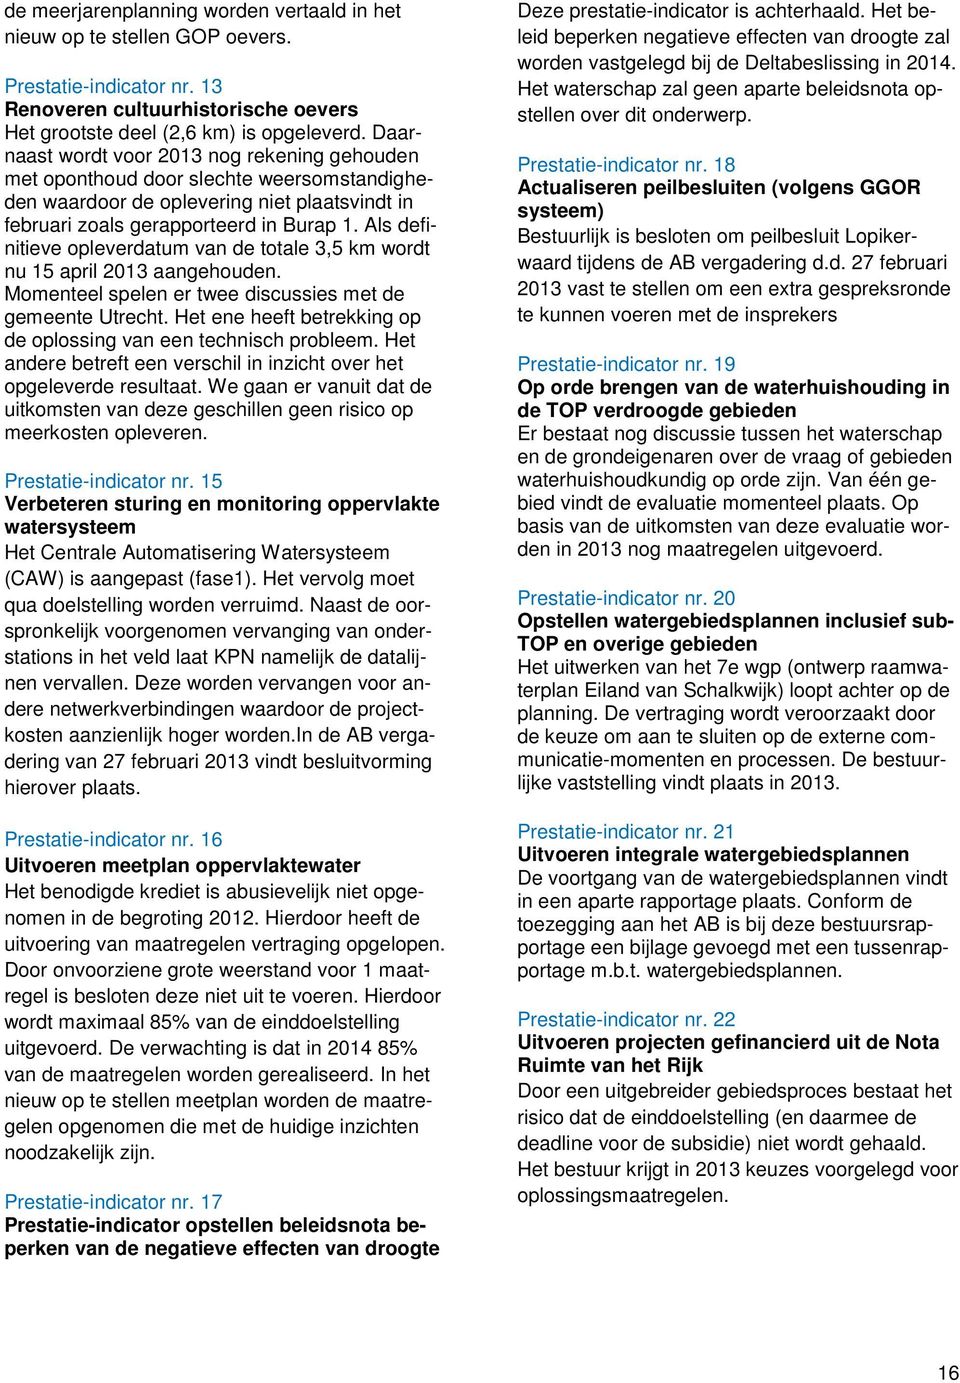 Als definitieve opleverdatum van de totale 3,5 km wordt nu 15 april 2013 aangehouden. Momenteel spelen er twee discussies met de gemeente Utrecht.